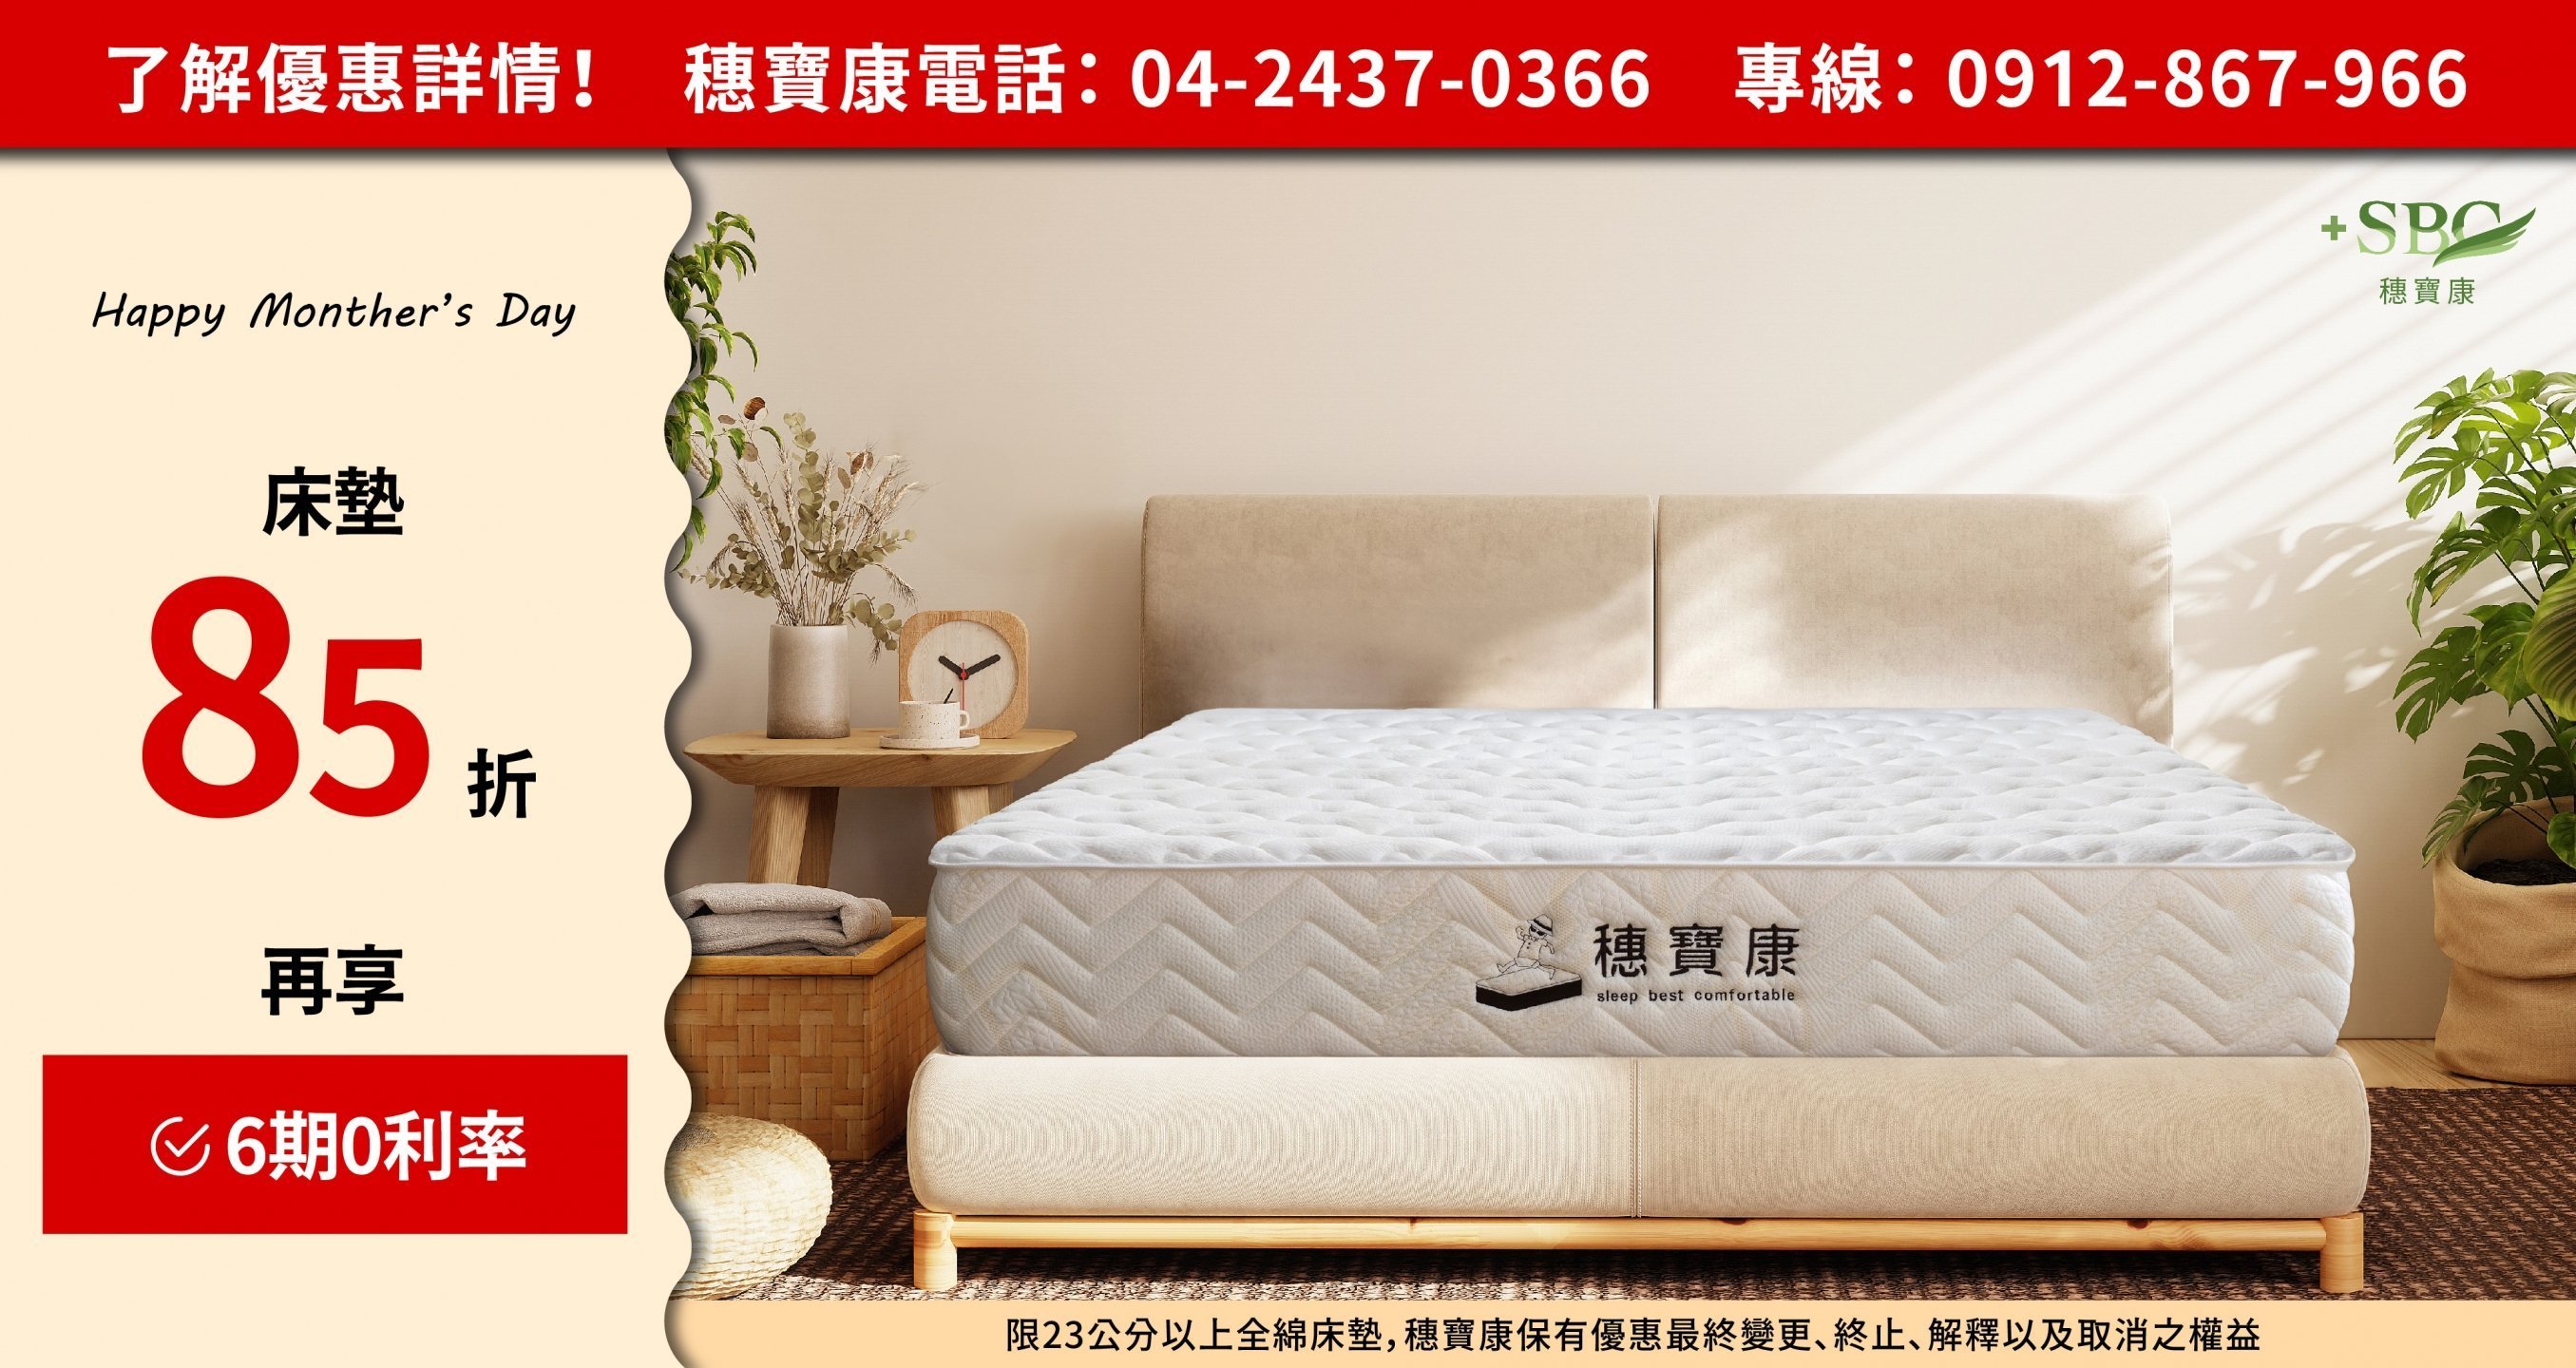 床墊、床墊推薦、床墊尺寸、床墊回收、床墊清潔、床墊價格、床墊推薦品牌